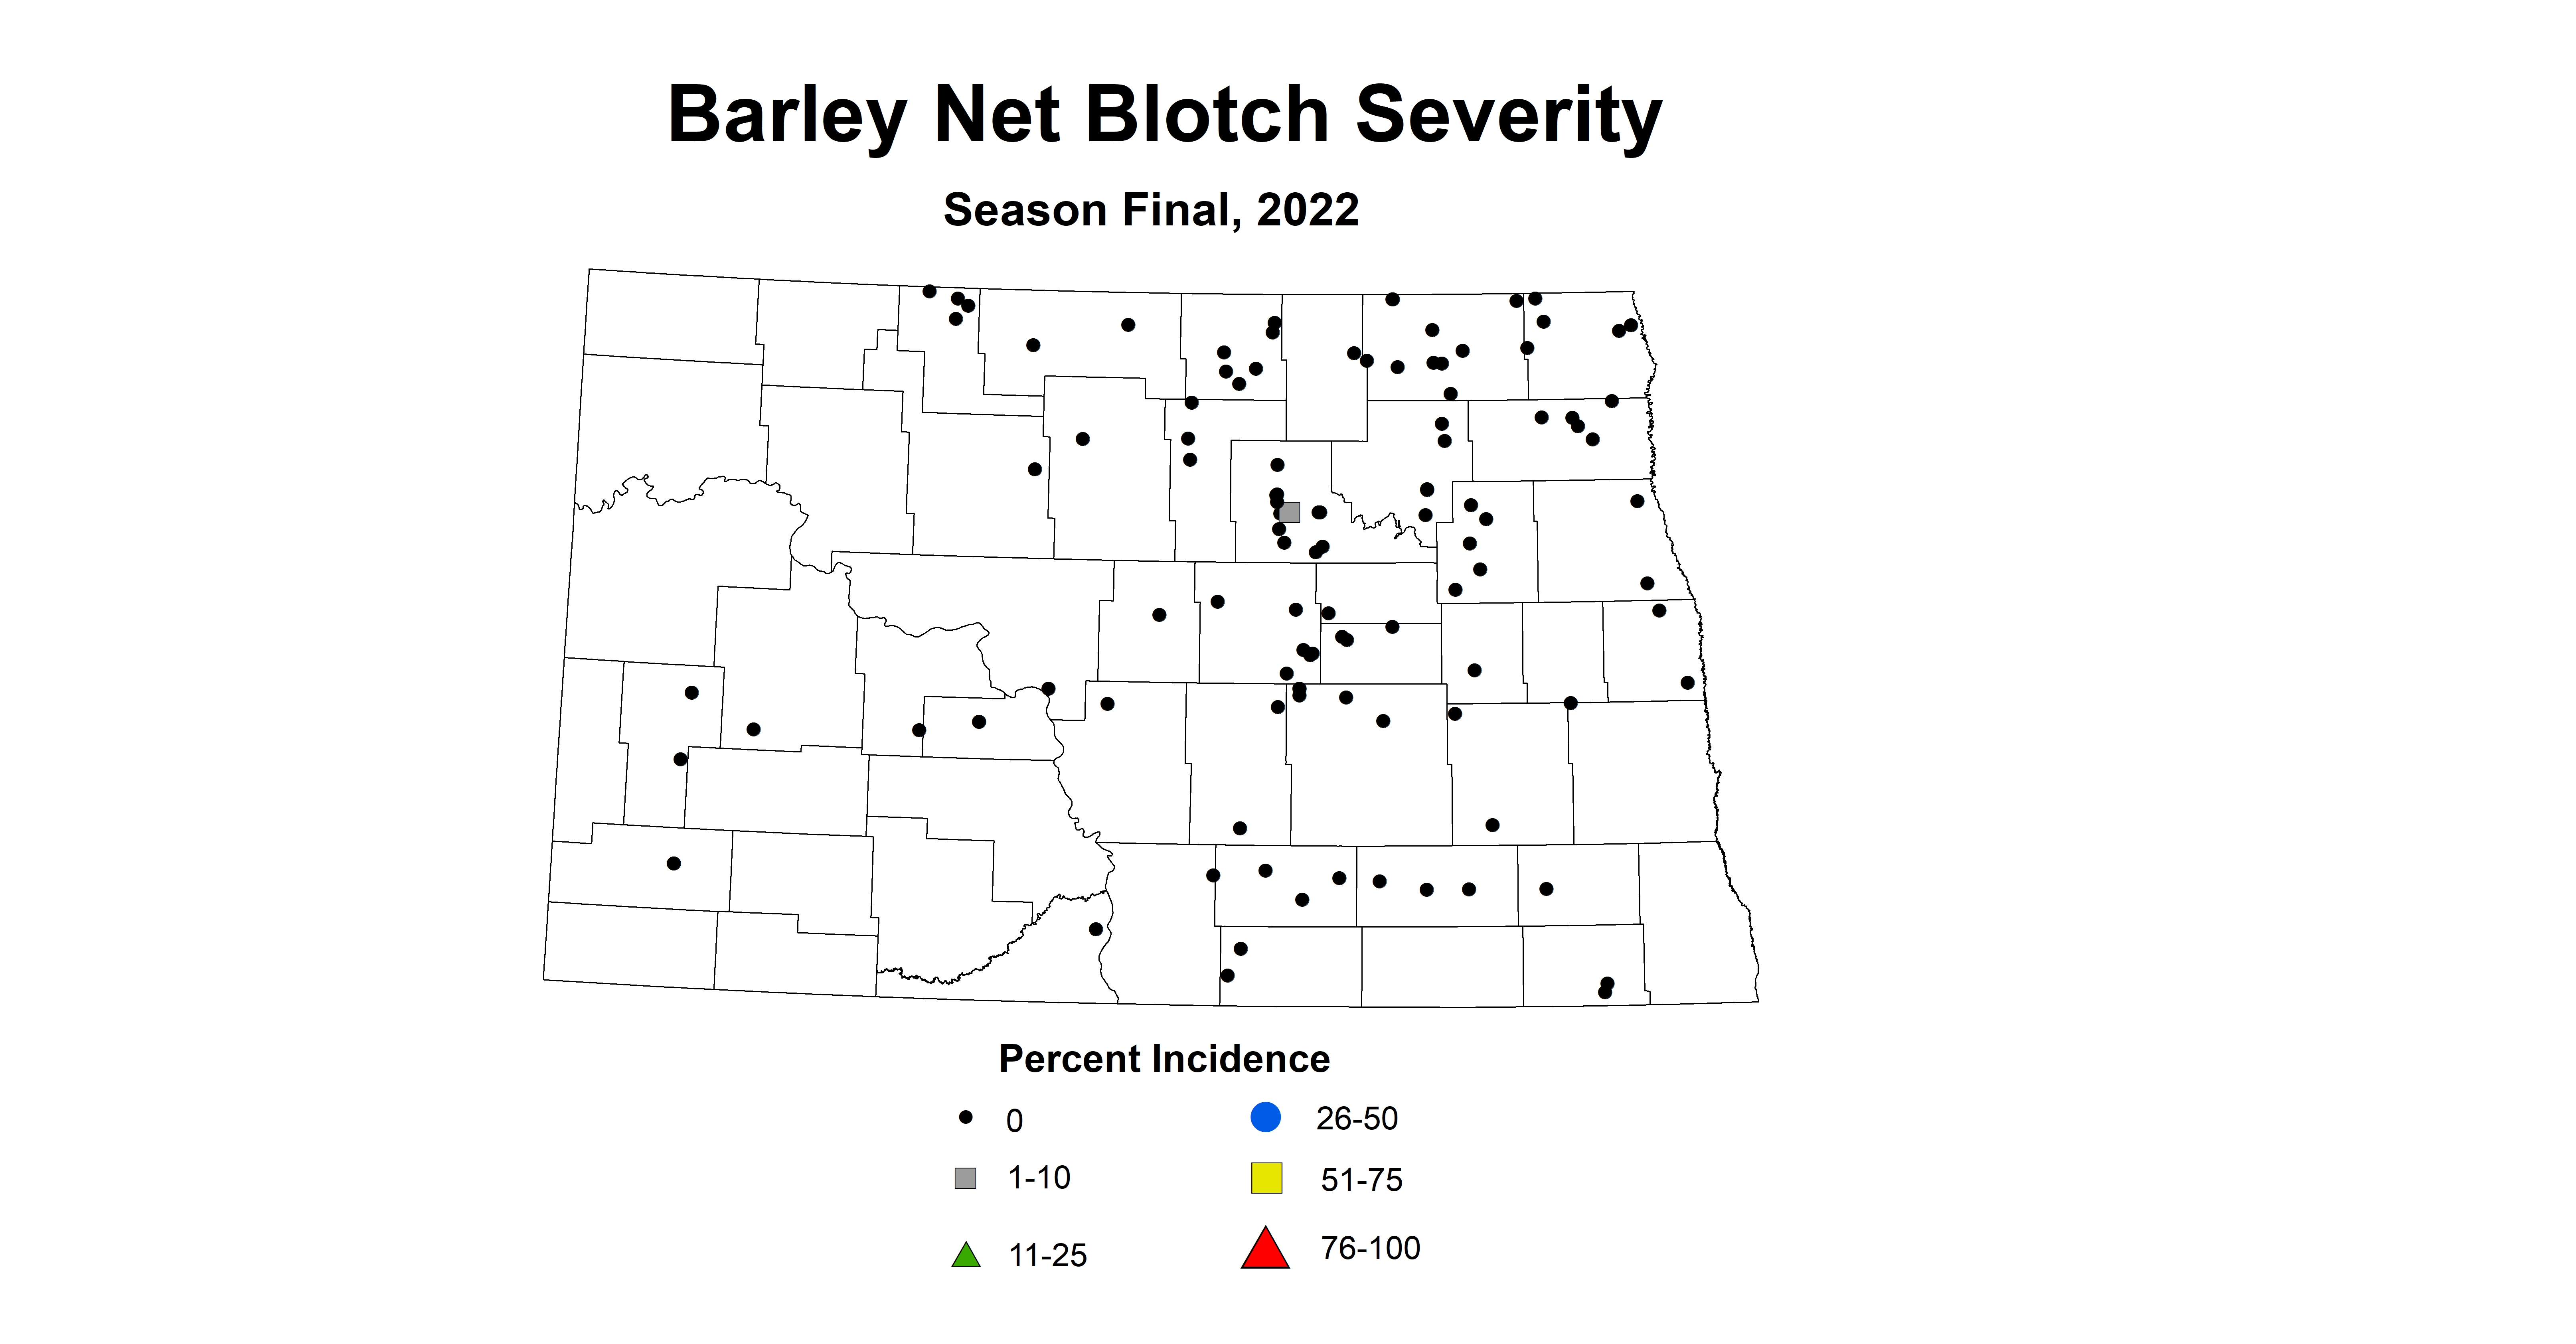 barley net blotch severity 2022 season final